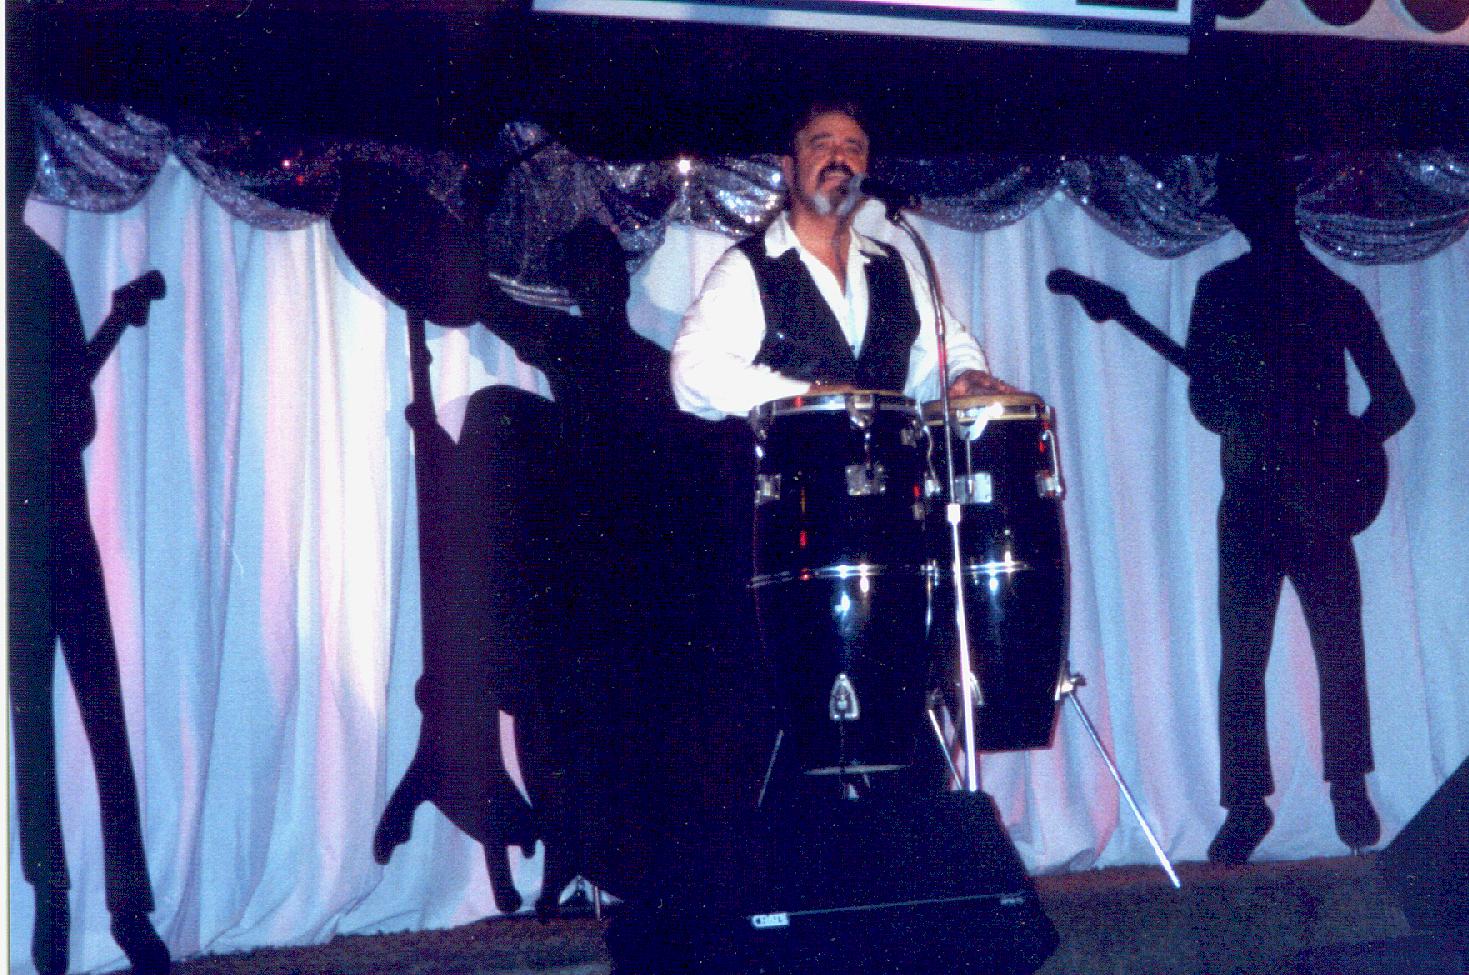 JOE LOREY performing at the legendary CALUMET 